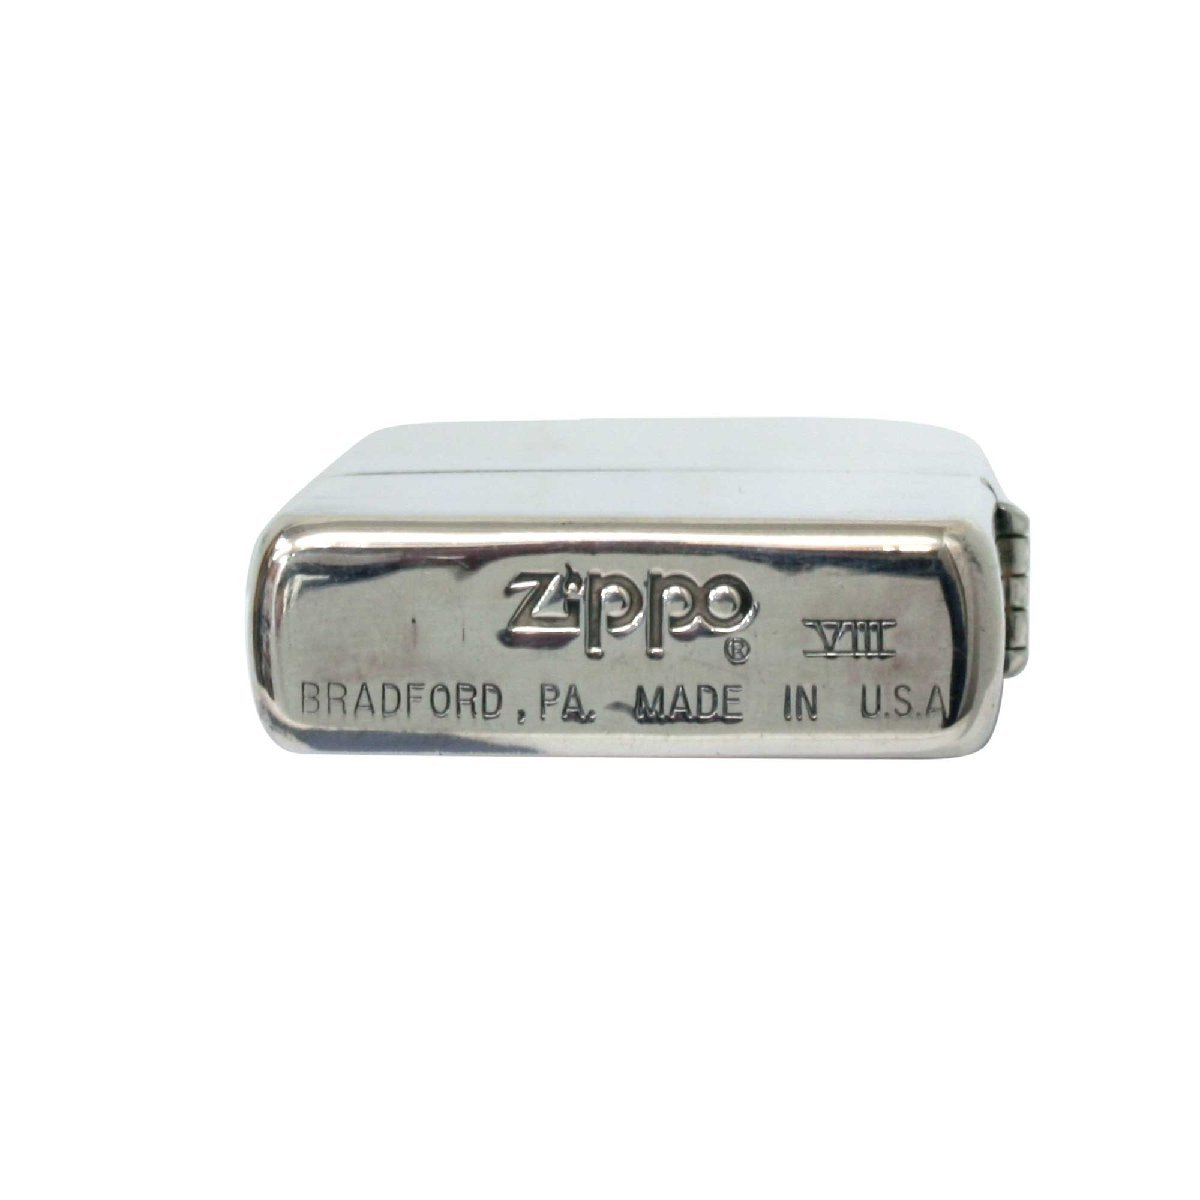 絶版/ヴィンテージ Zippo ジッポー 中古 1992年製造ZIPPO JAPAN FAN 向けメッセージ マイケル・A・シューラー [C]使用感あり傷汚れあり_画像5